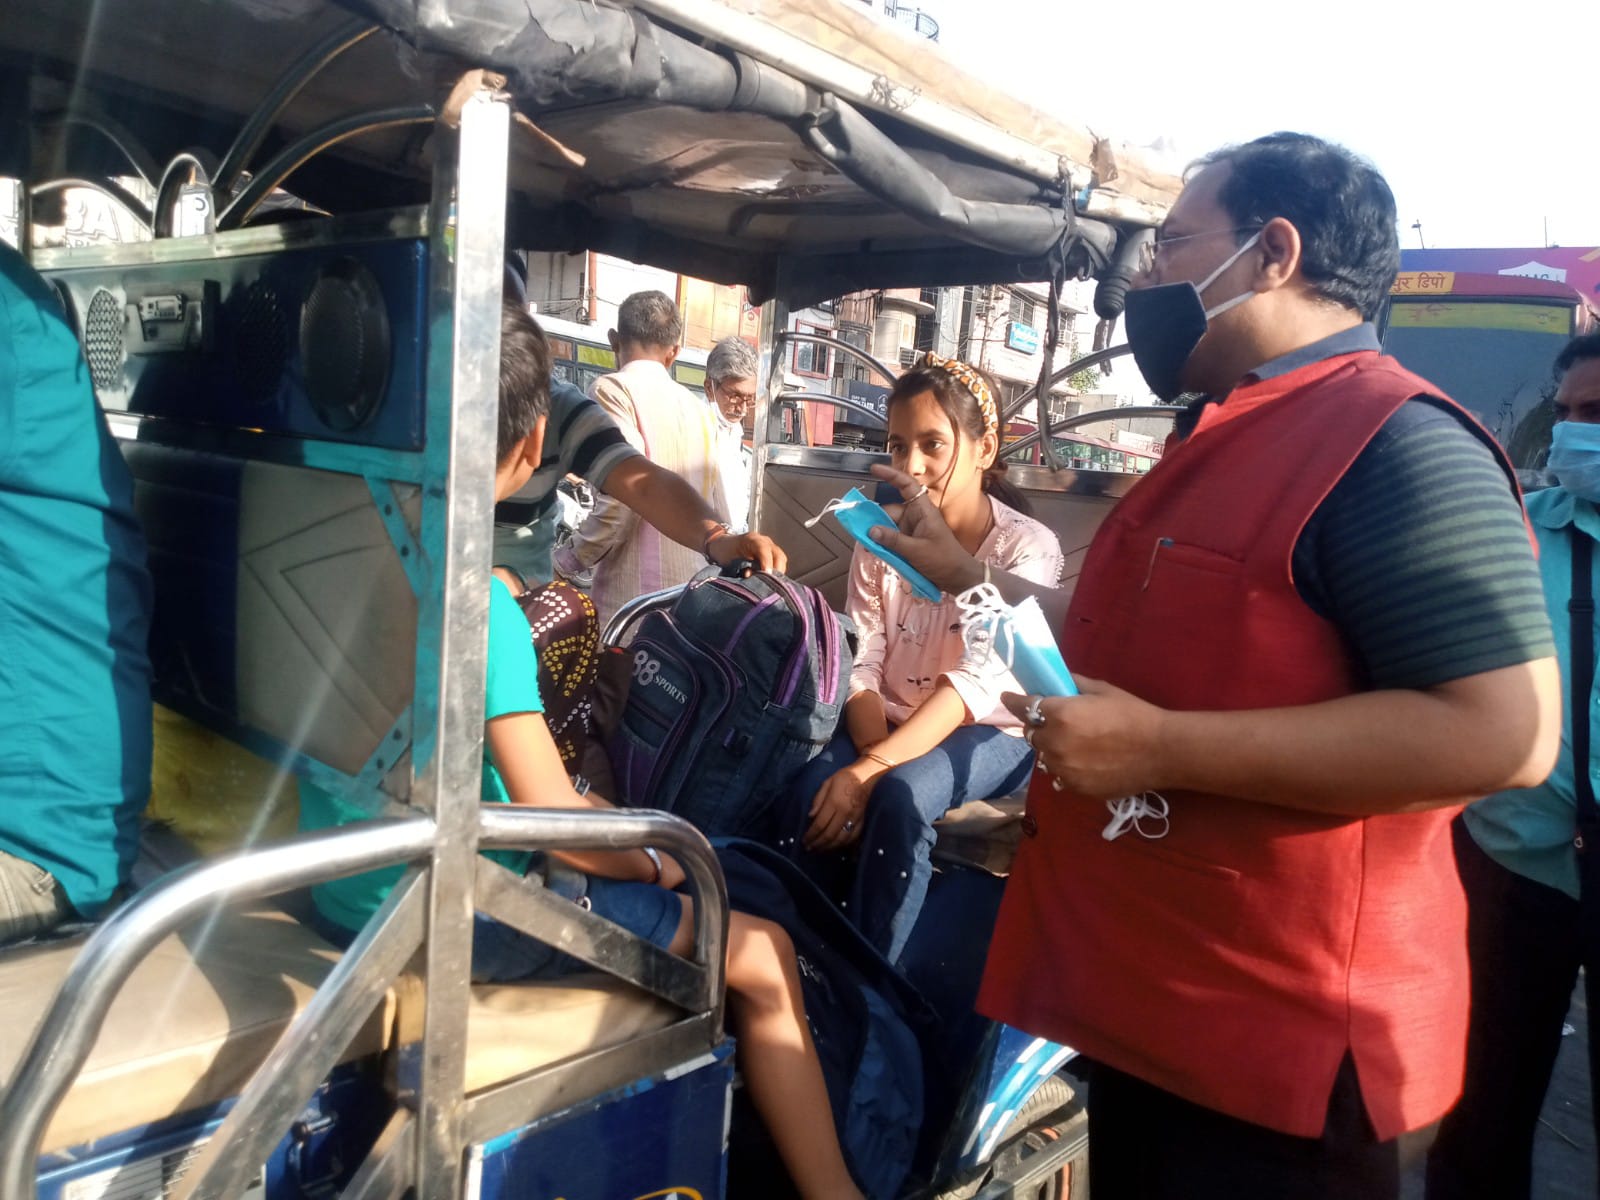 देश के अन्य राज्यों दिल्ली मद्रास मुंबई से आने वाले लोगों से उत्तराखंड के महानगर देहरादून में बढ़ा कोरोना का खतरा : एडवोकेट नवीन कुमार जैन